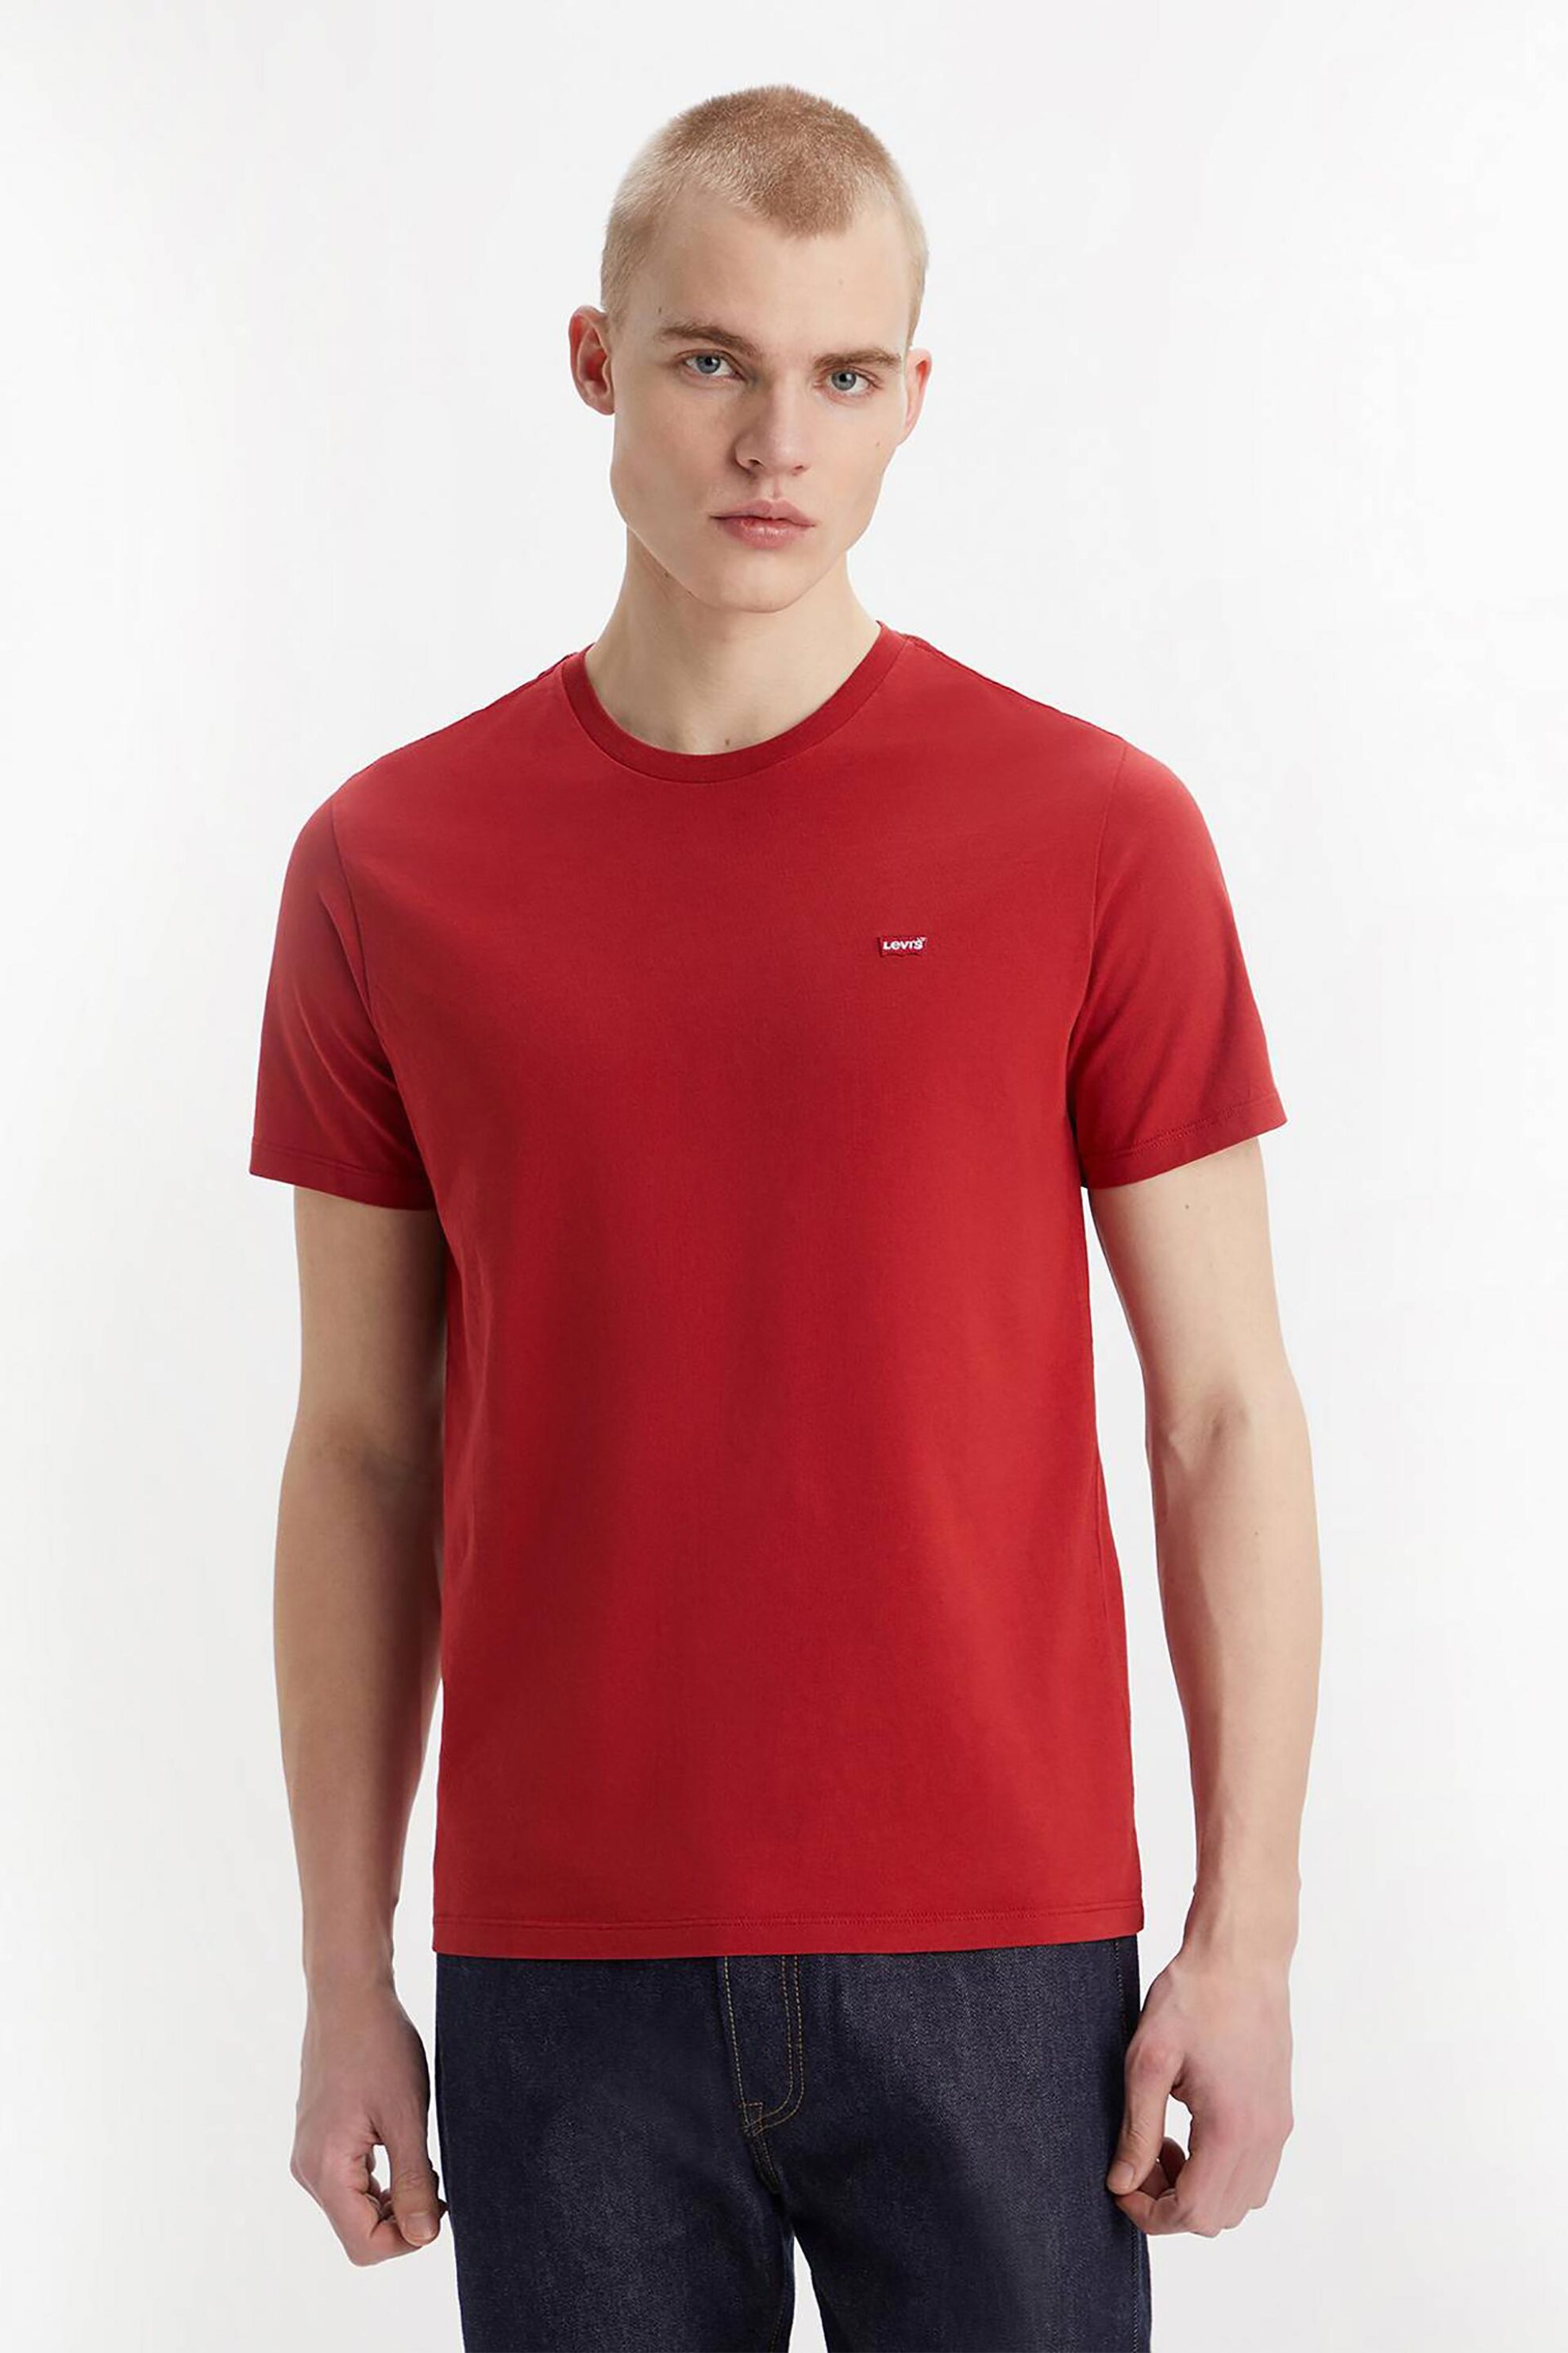 Ανδρική Μόδα > Ανδρικά Ρούχα > Ανδρικές Μπλούζες > Ανδρικά T-Shirts Levi's® ανδρικό T-shirt μονόχρωμο με λογότυπο Regular Fit "Original Housemark" - 566050176 Κόκκινο